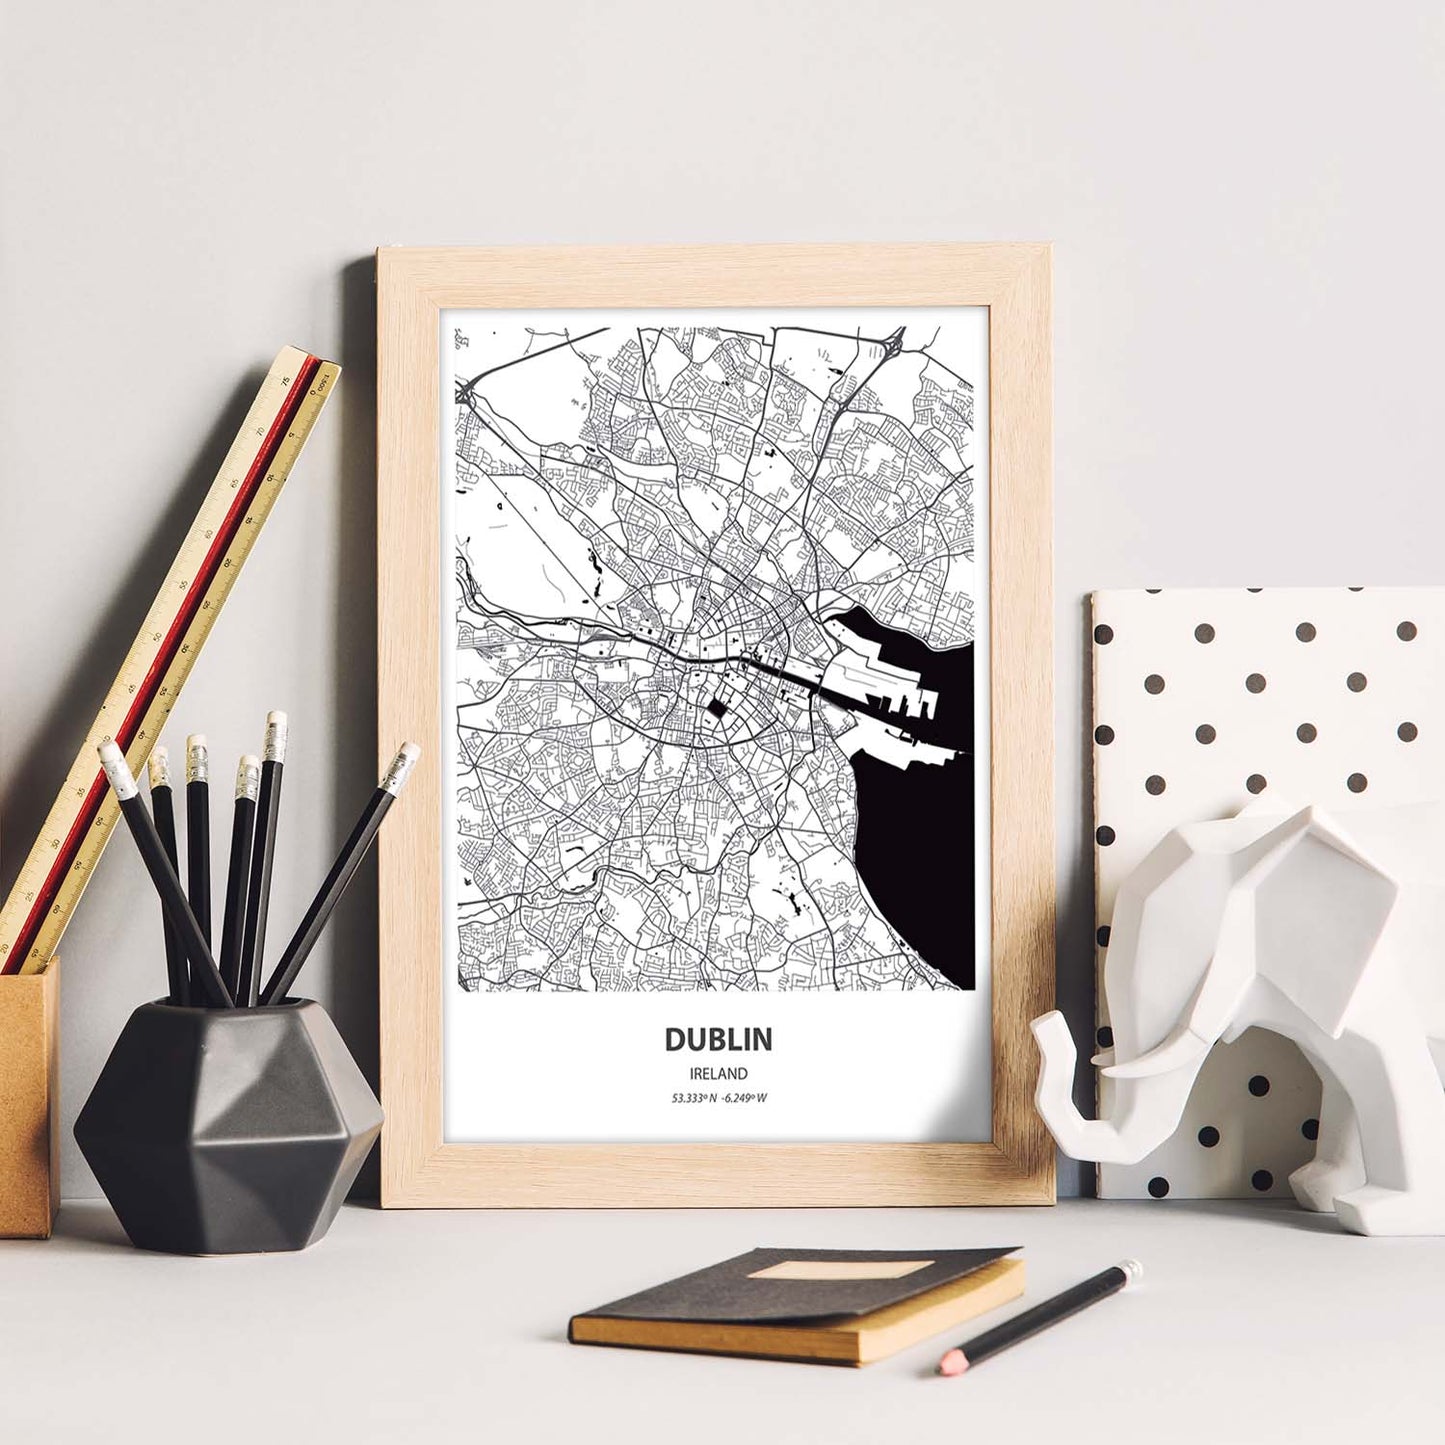 Poster con mapa de Dublin - Irlanda. Láminas de ciudades de Europa con mares y ríos en color negro.-Artwork-Nacnic-Nacnic Estudio SL